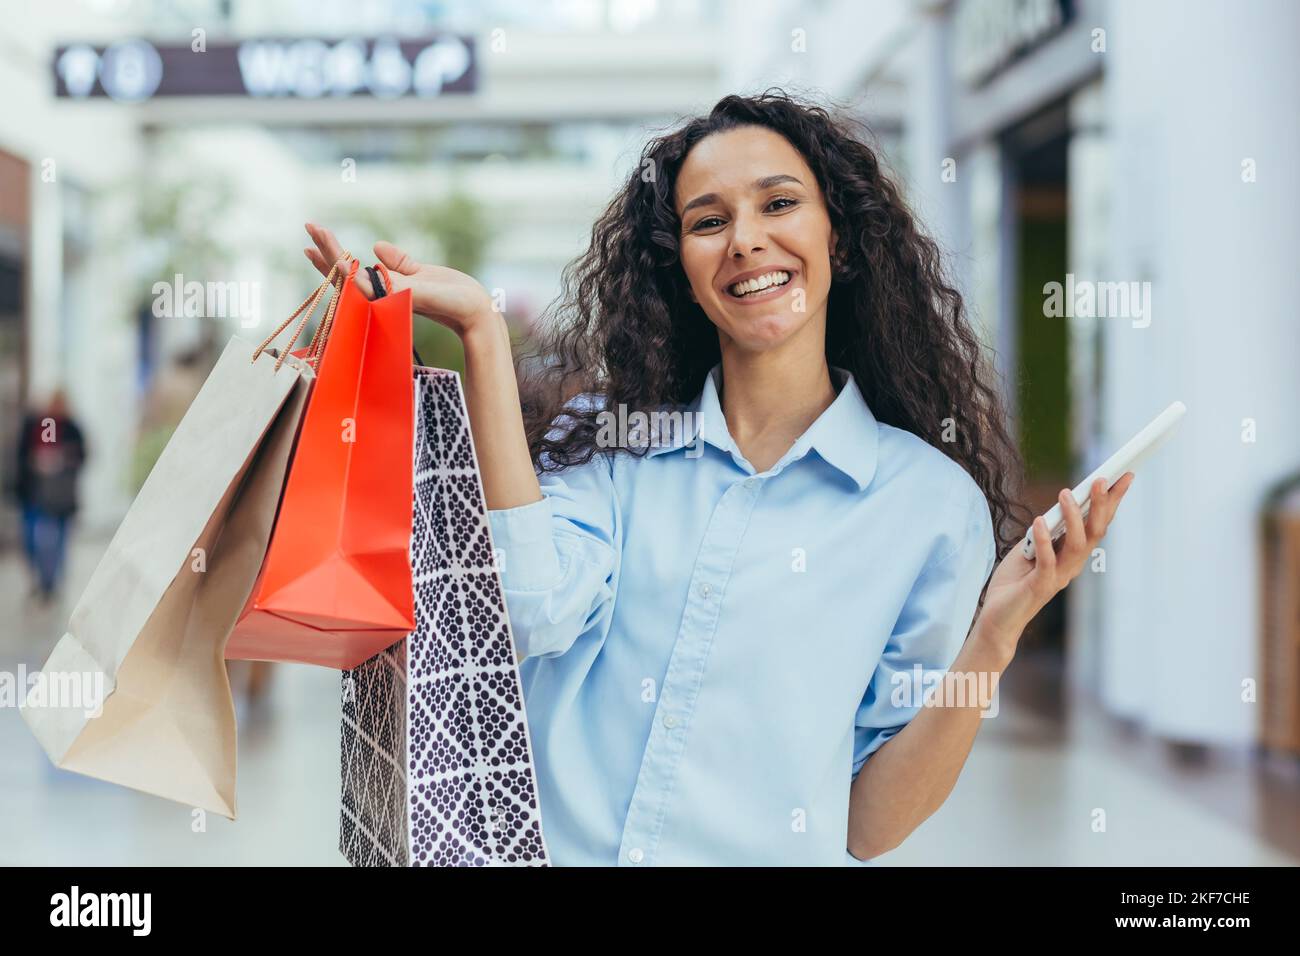 Une jeune femme hispanique attrayante fait ses courses dans un centre commercial, avec des sacs colorés et un téléphone portable. Affiche les achats, les brags, les sourires. Banque D'Images